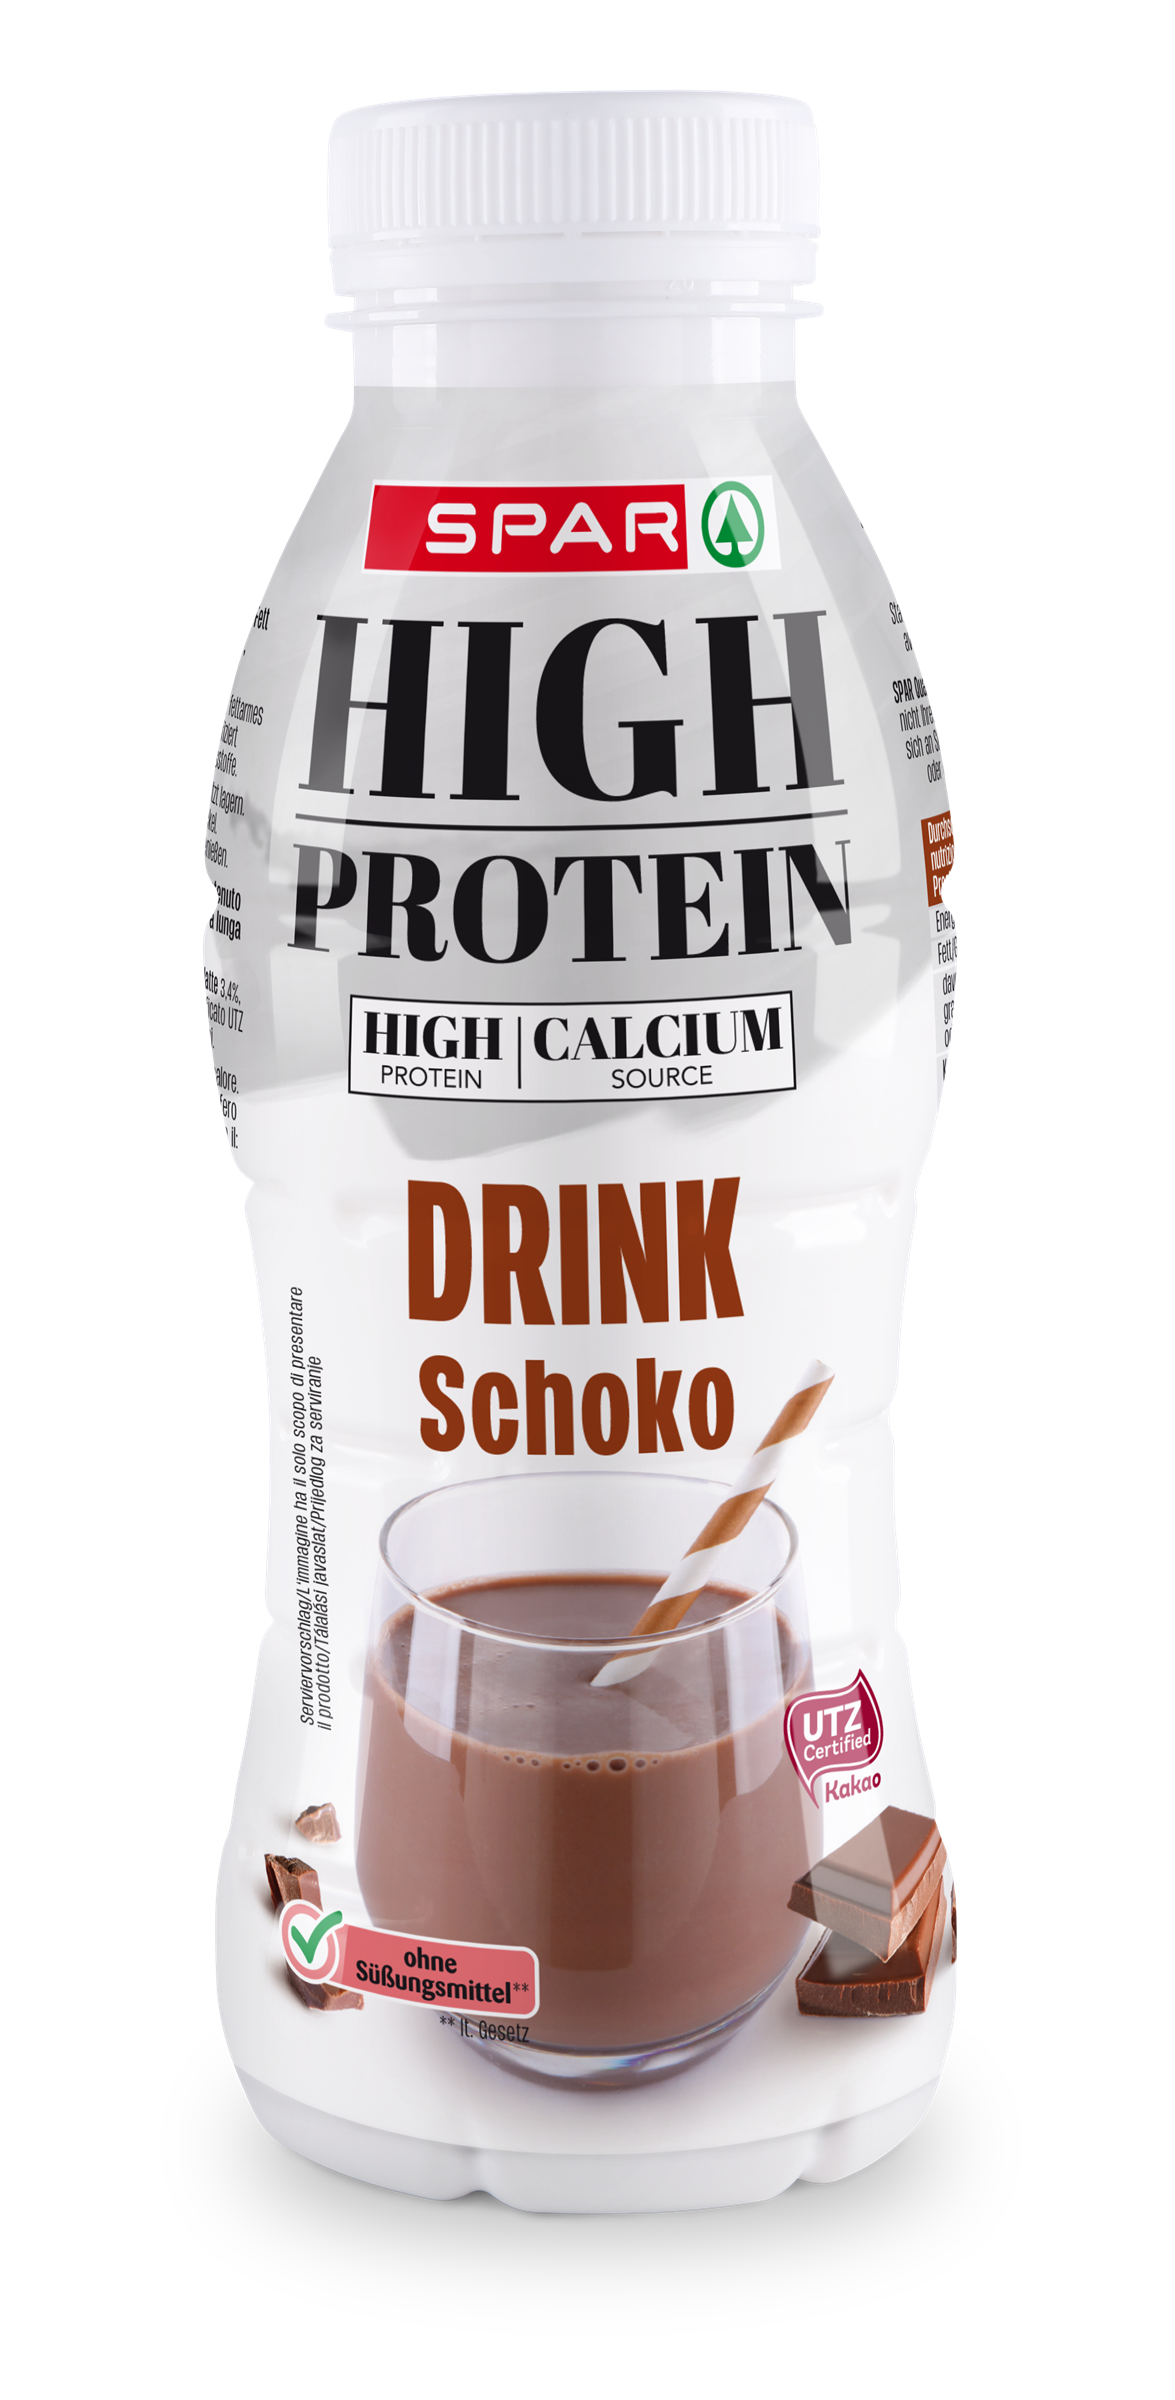 SPAR_High_Protein_Drink_Schoko